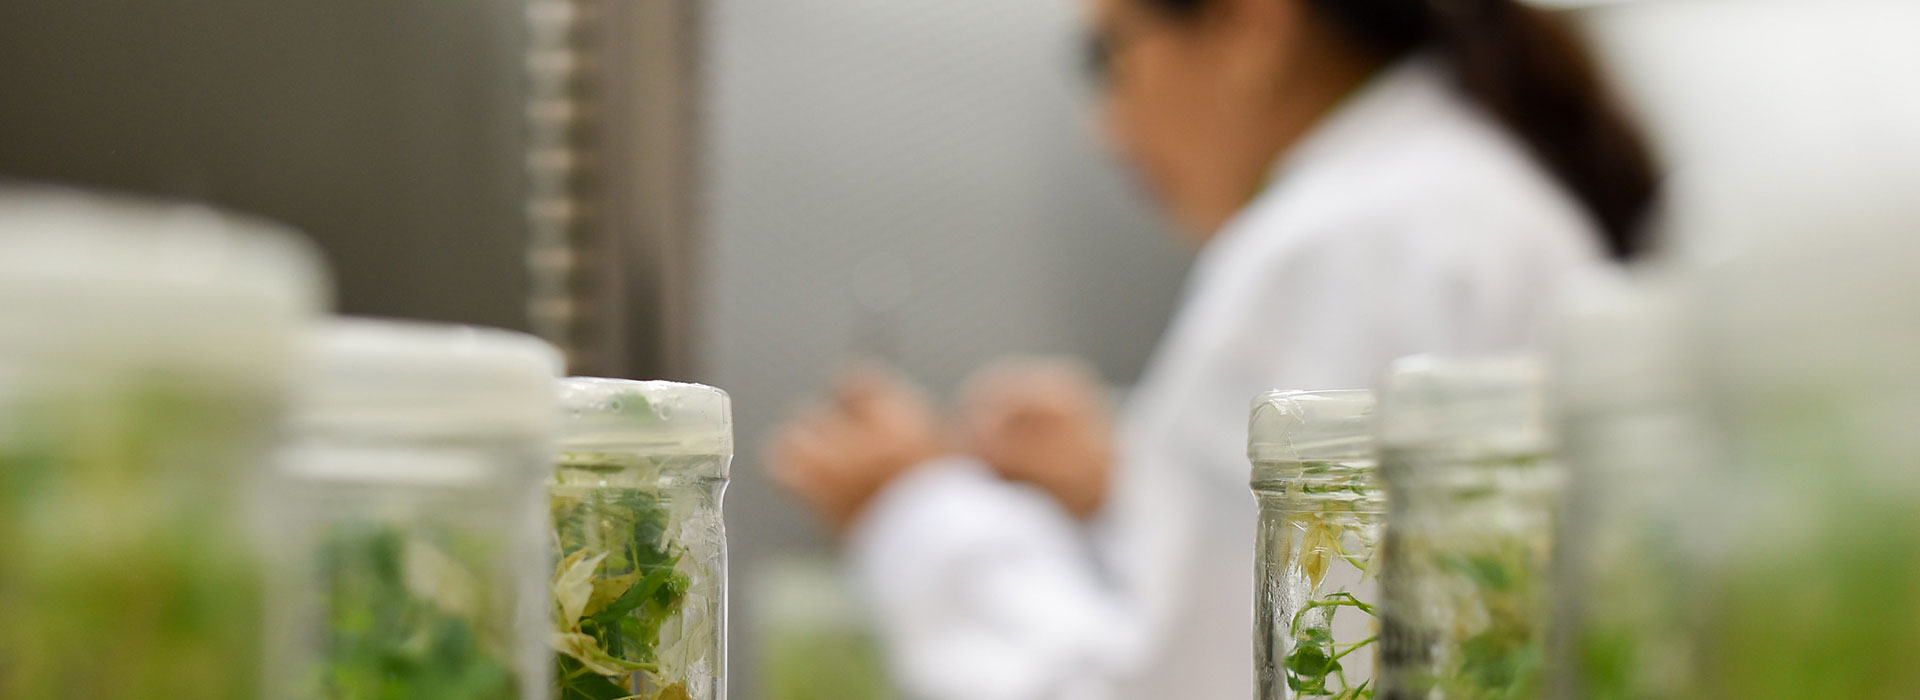 Laborumgebung mit fokussierten Pflanzenproben im Vordergrund und einer unscharfen Forscherin im Hintergrund.